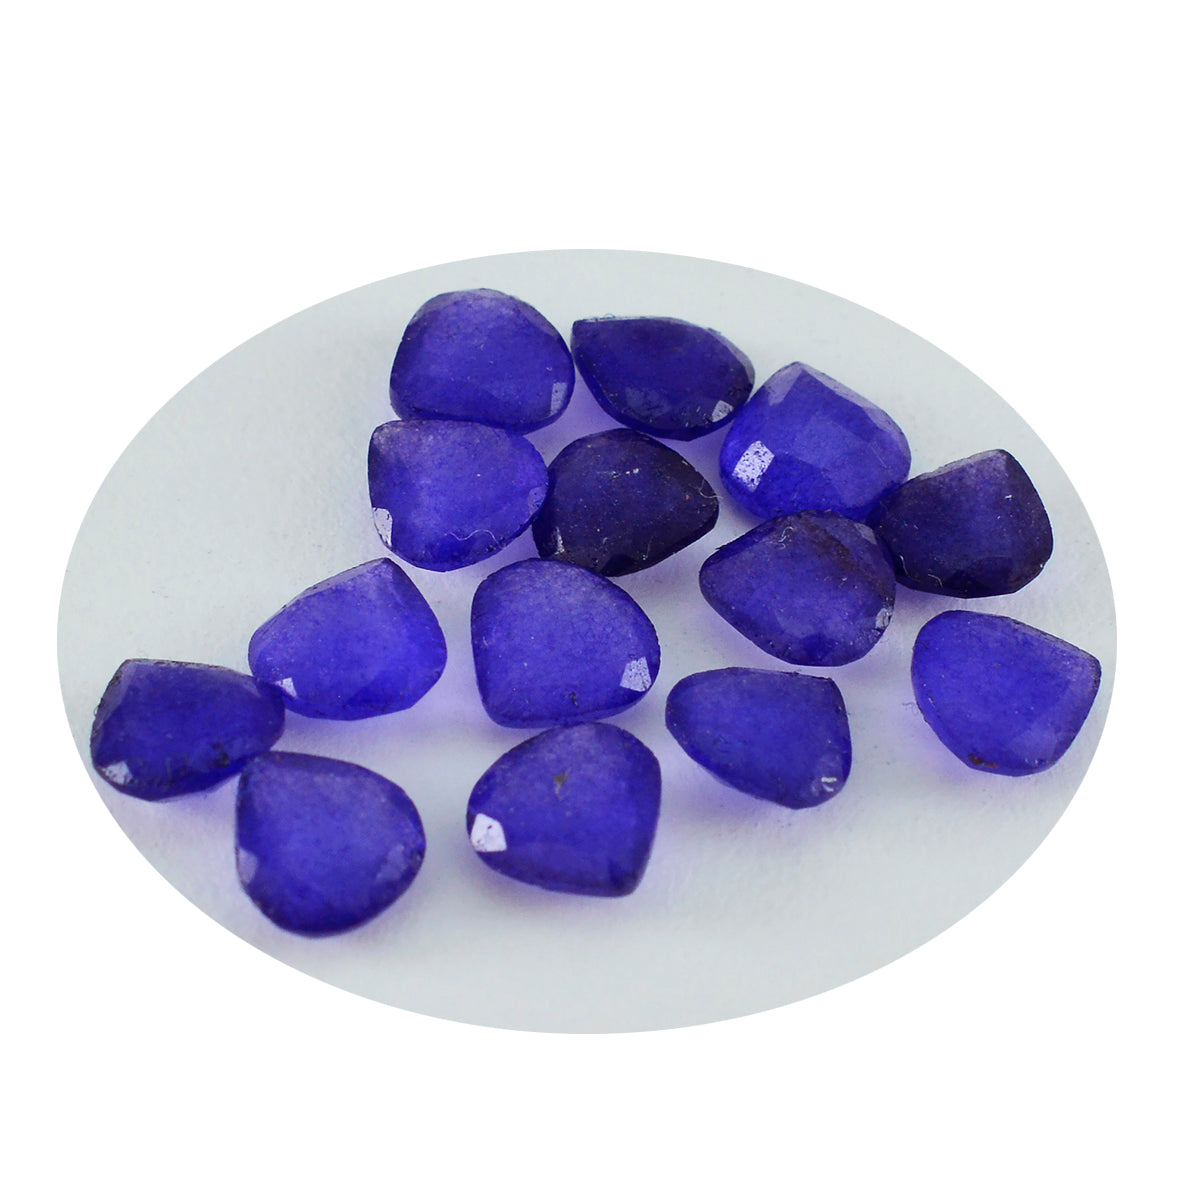 Riyogems 1 pièce de jaspe bleu véritable à facettes 7x7mm en forme de cœur qualité fantastique pierre précieuse en vrac